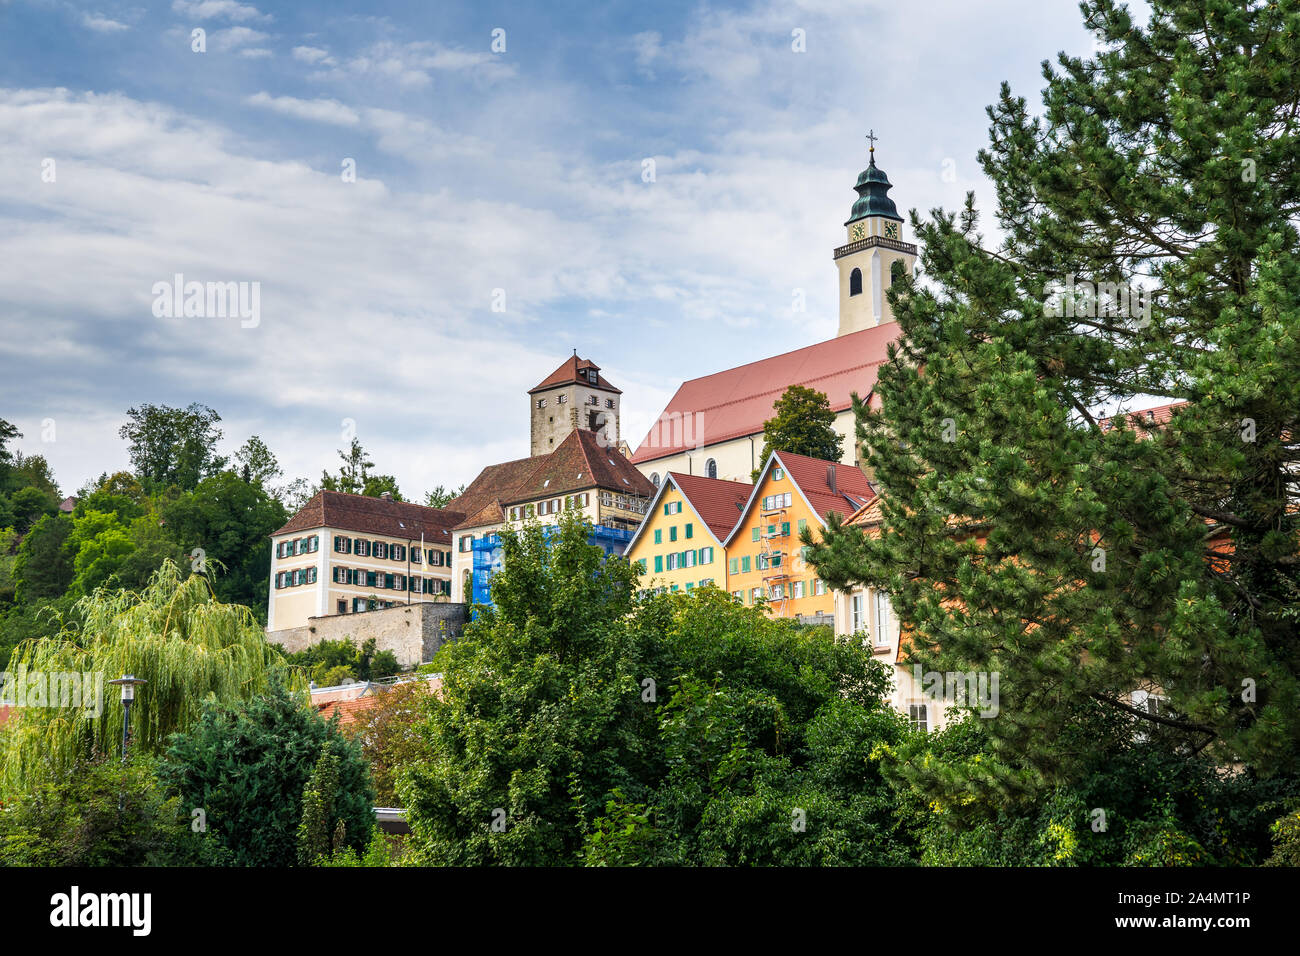 Deutschland, Altstadt Häuser von Schwarzwälder Dorf Horb am Neckar von grünen Bäumen umgeben an einem sonnigen Tag Stockfoto